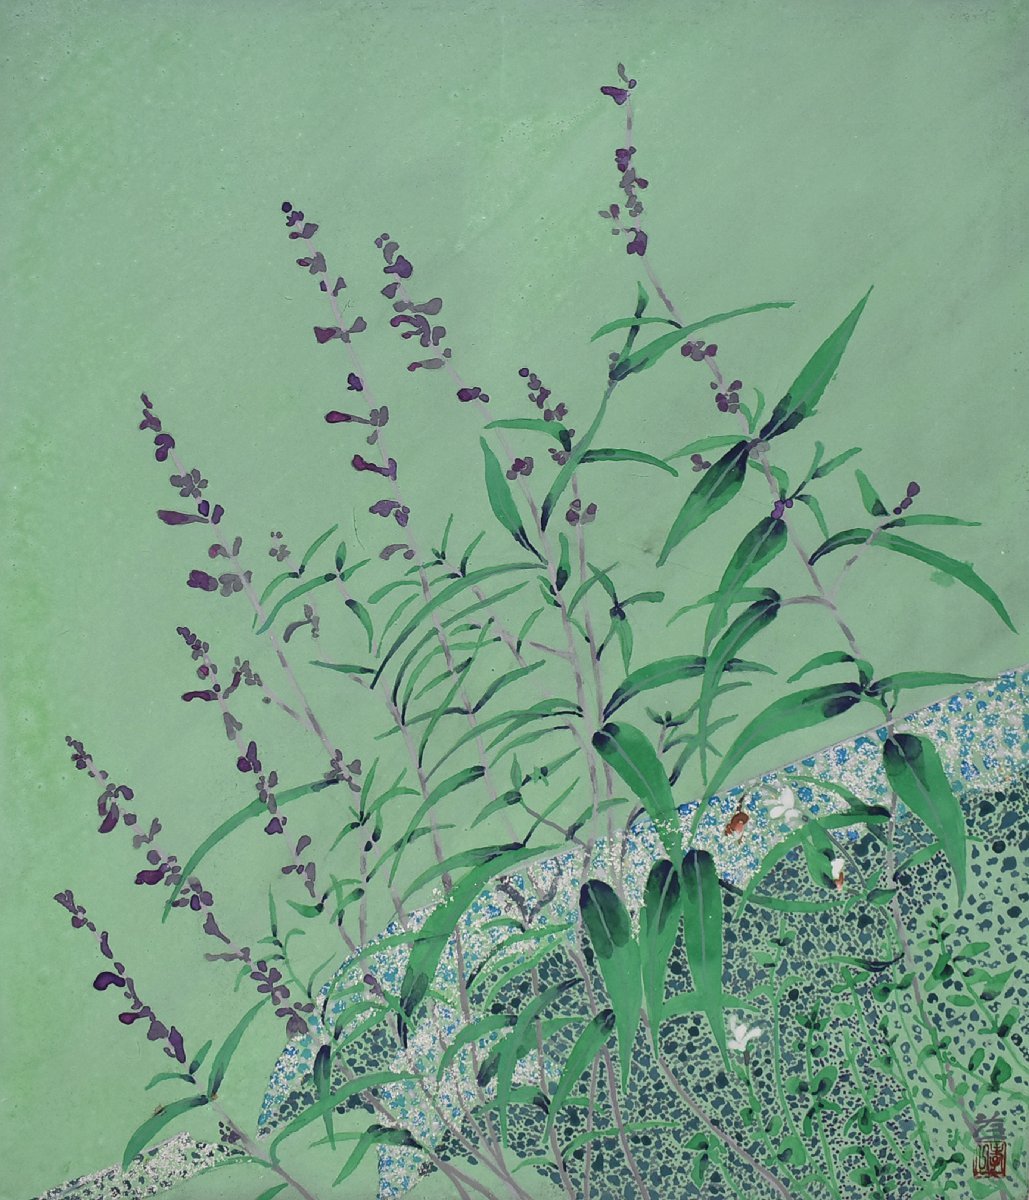 [Galerie Masami - 5, 500 pièces exposées ! Vous êtes sûr de trouver une pièce que vous aimez] Peintre japonais populaire Koichi Suzuki 10F Torinren encadré, Peinture, Peinture japonaise, Fleurs et oiseaux, Faune